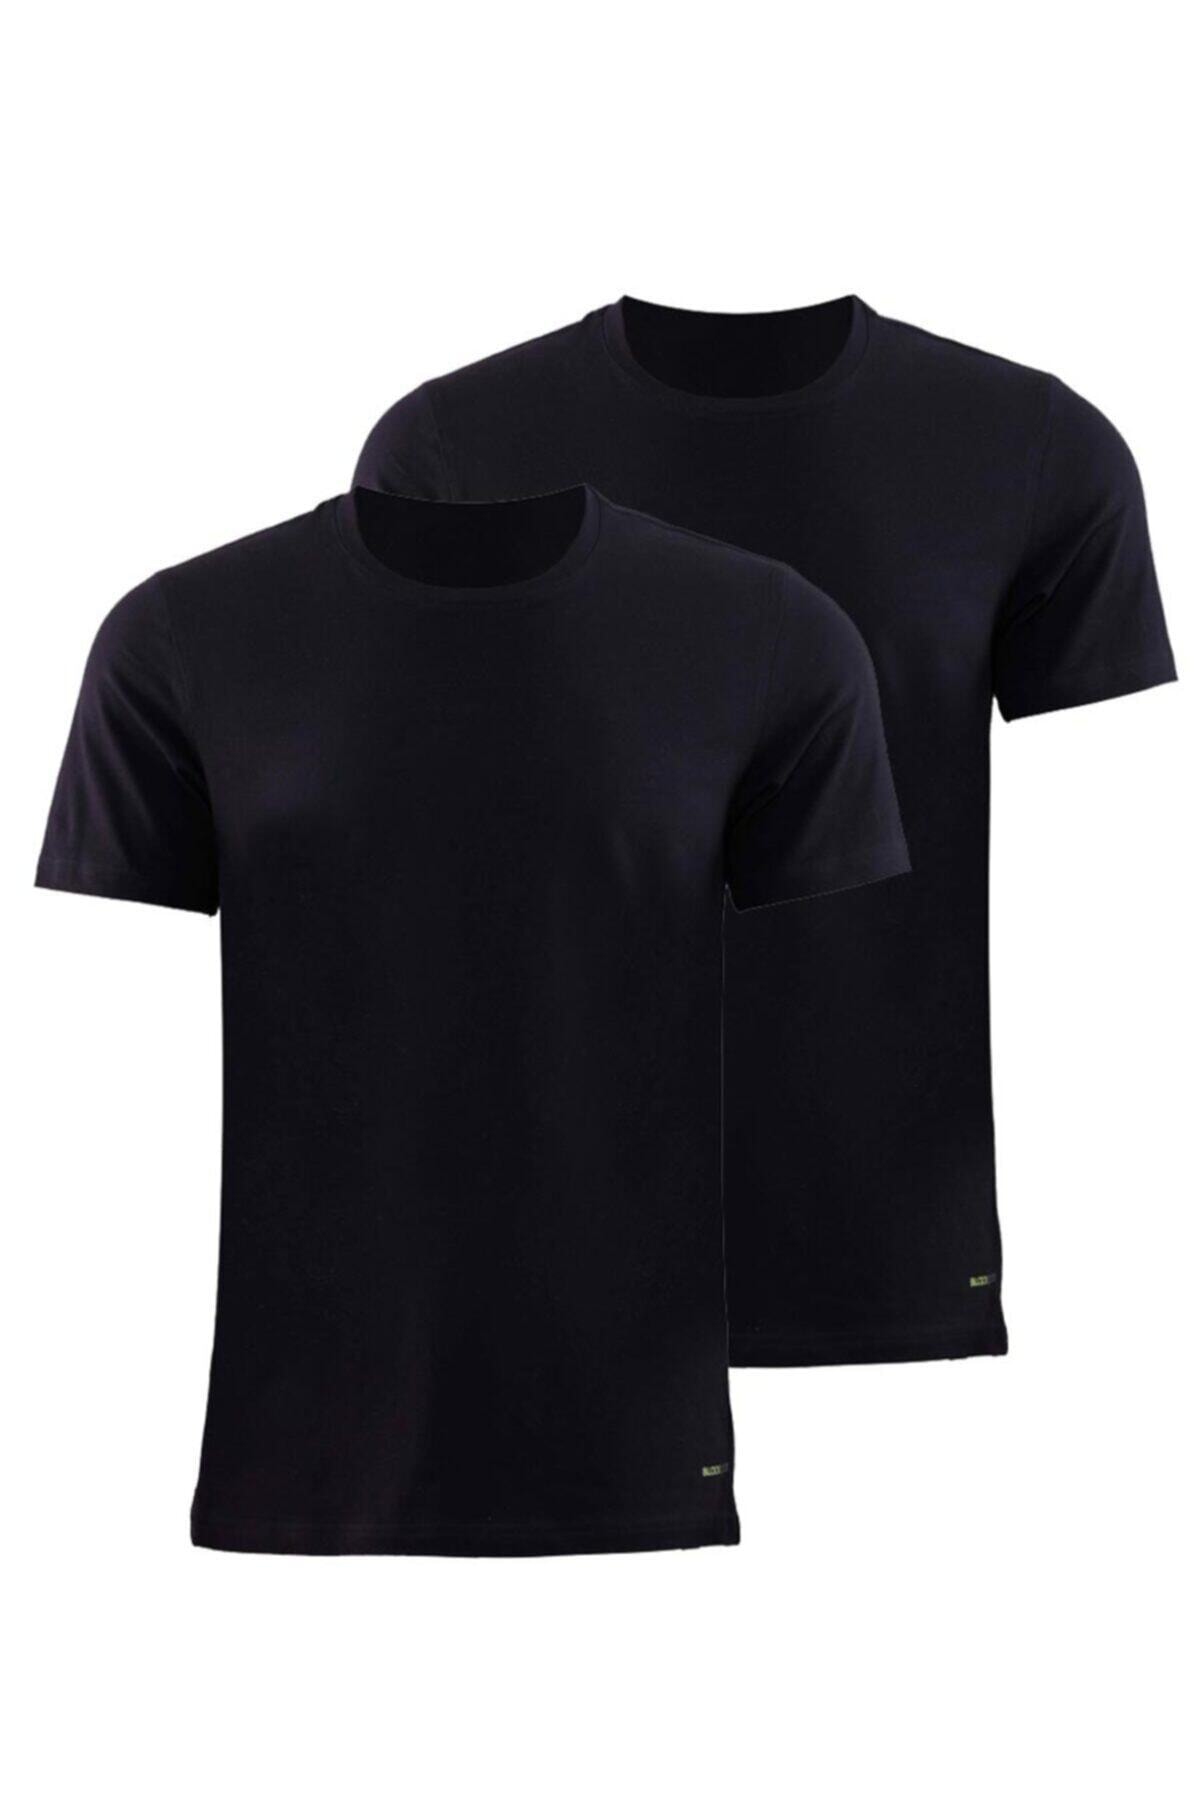 Blackspade 9675-Erkek Siyah 2li Paket T-shirt